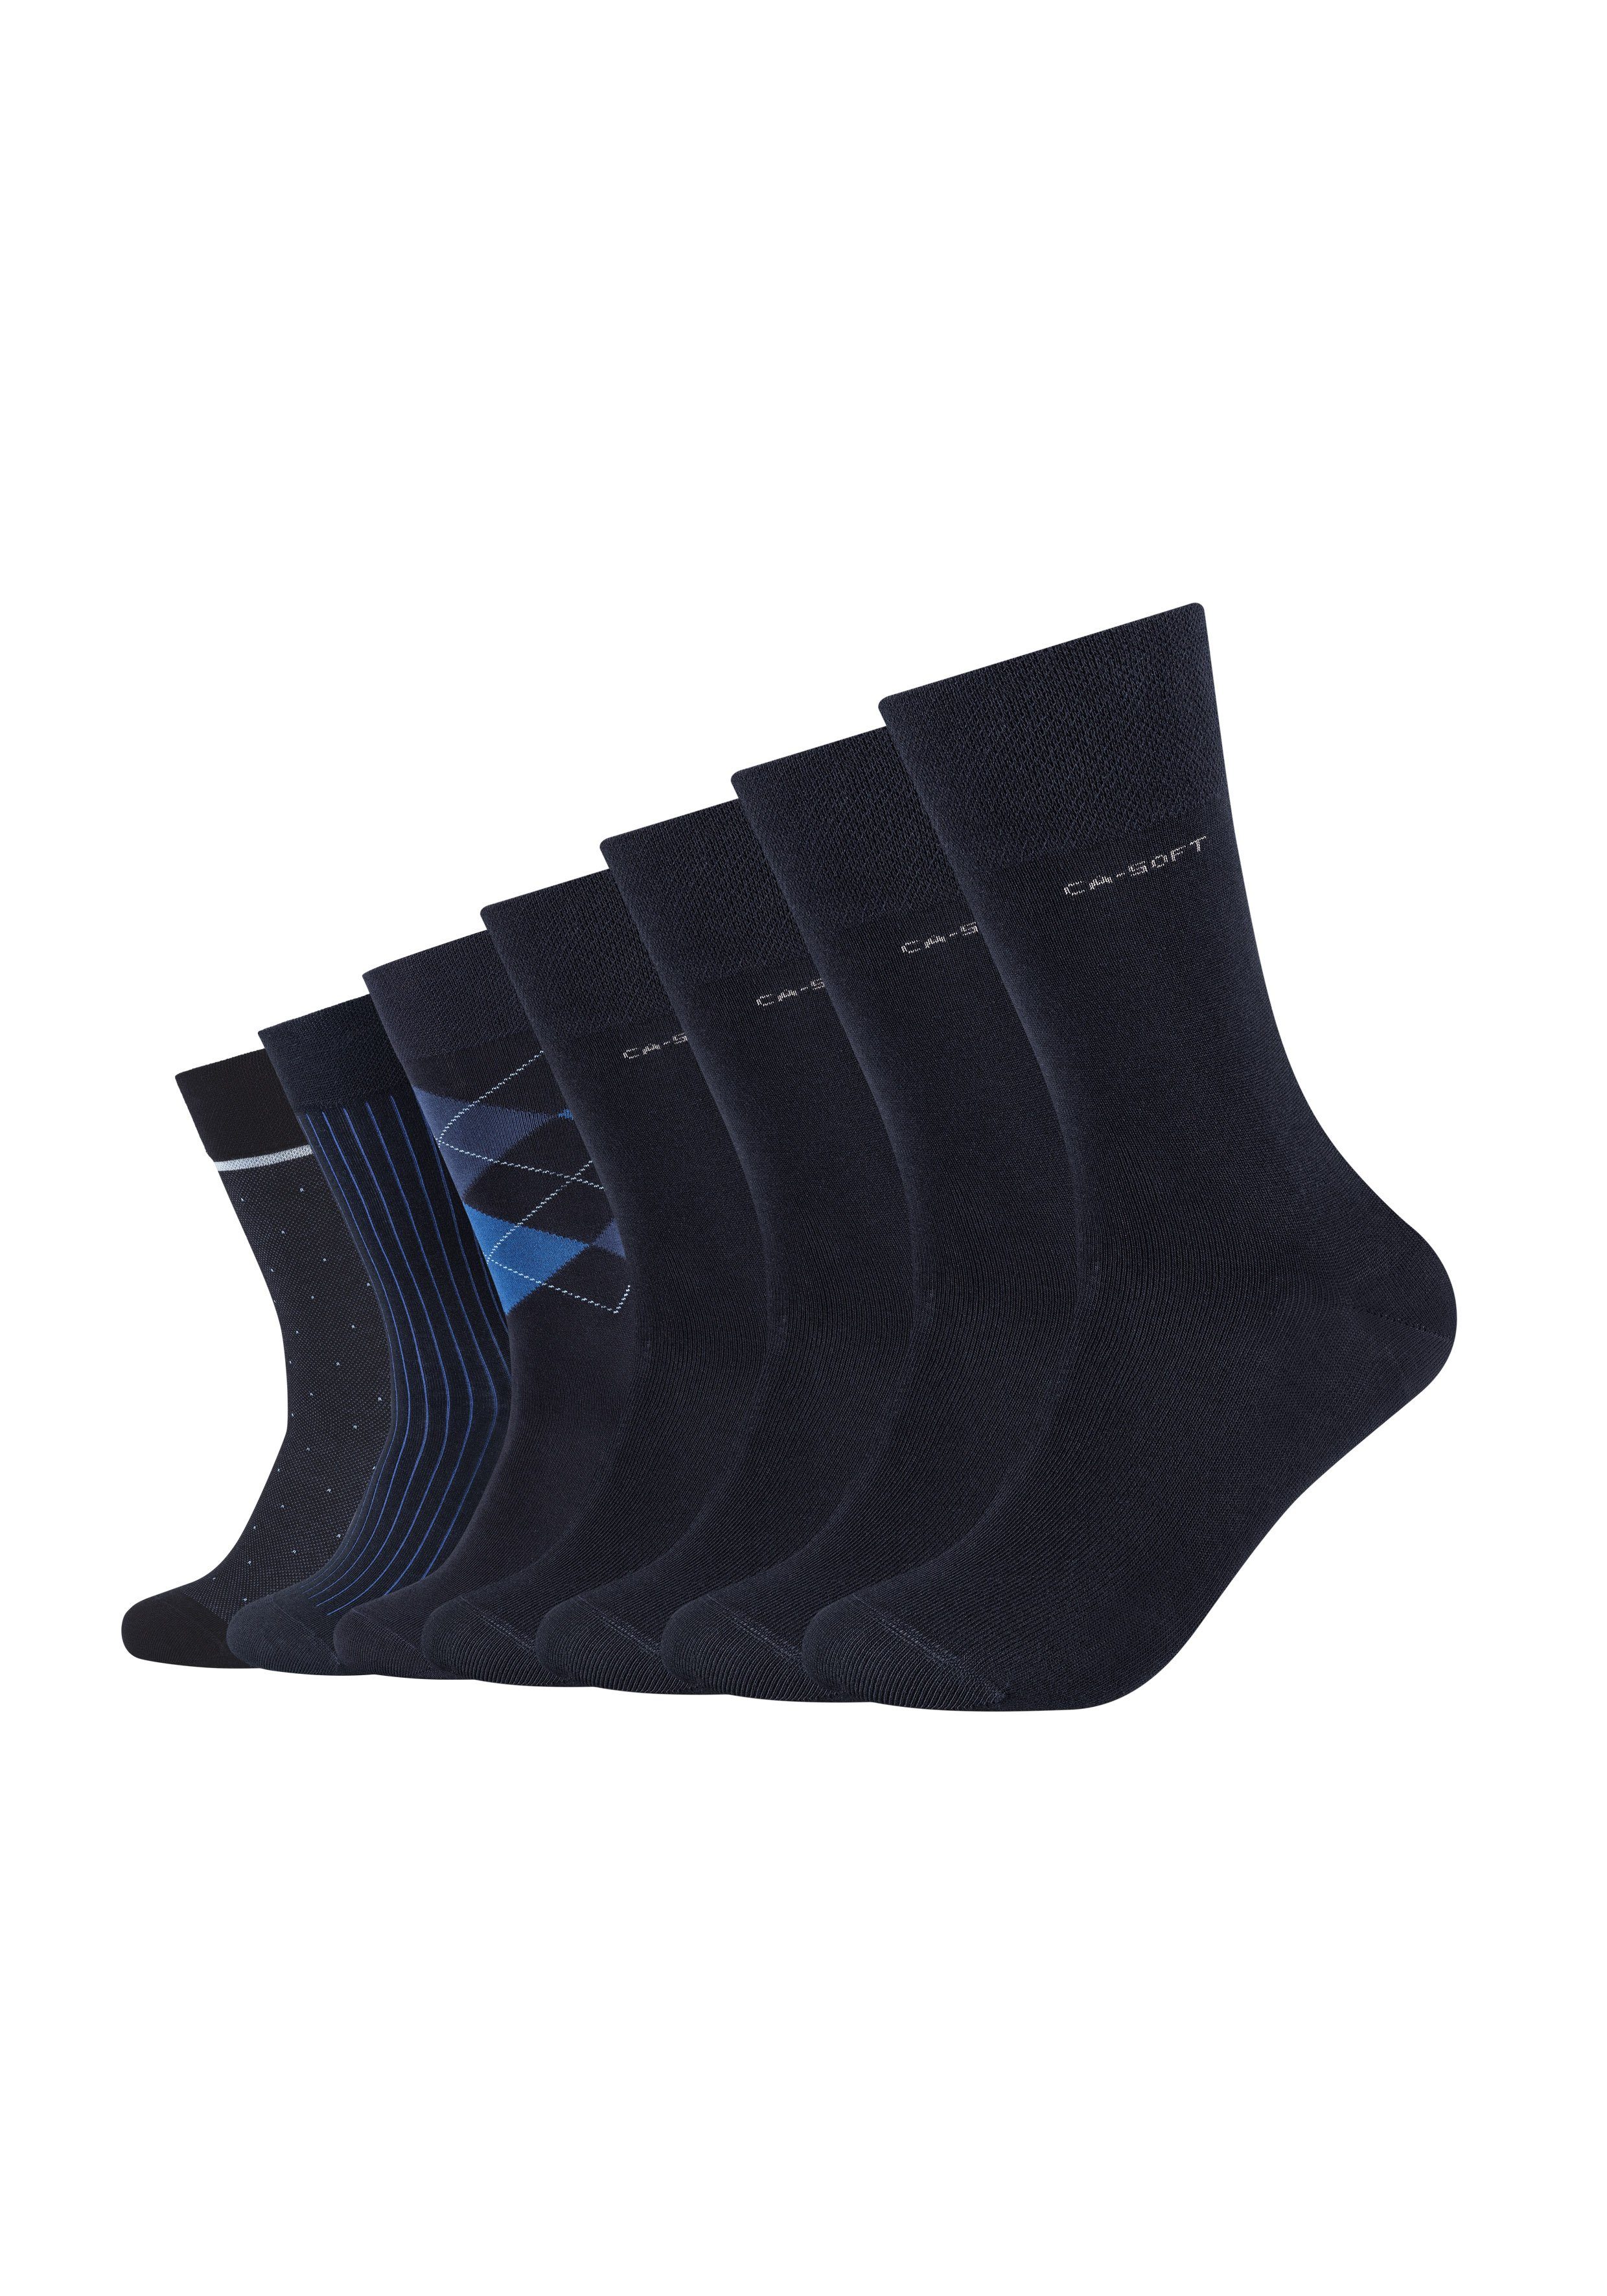 dunkelblau ca-soft (7-Paar) Socken weichem Komfortbund blau, mit Camano